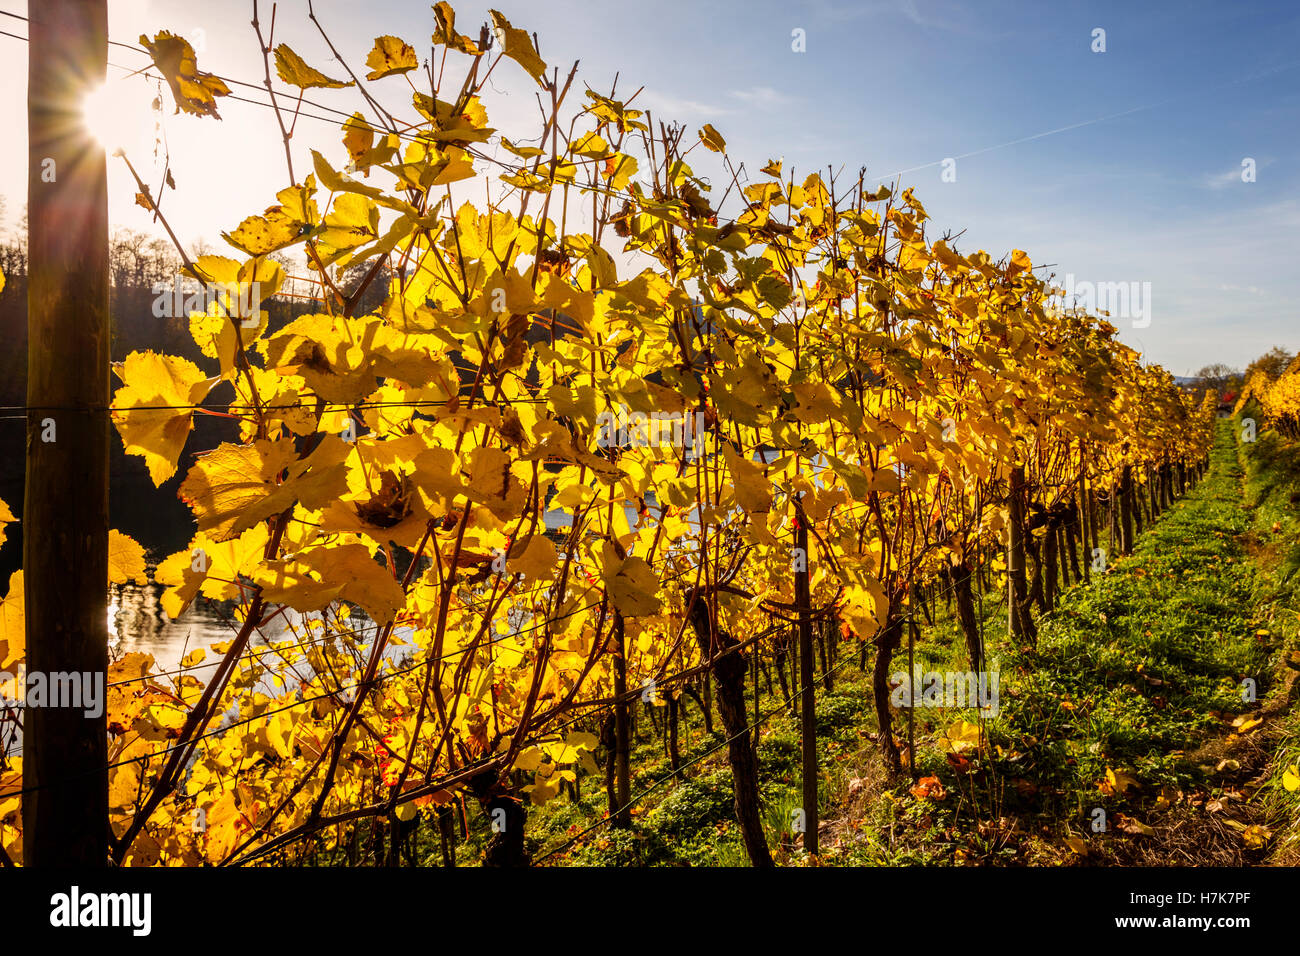 Row of vines in autumn, Eglisau, Canton of Zurich, Switzerland. Stock Photo